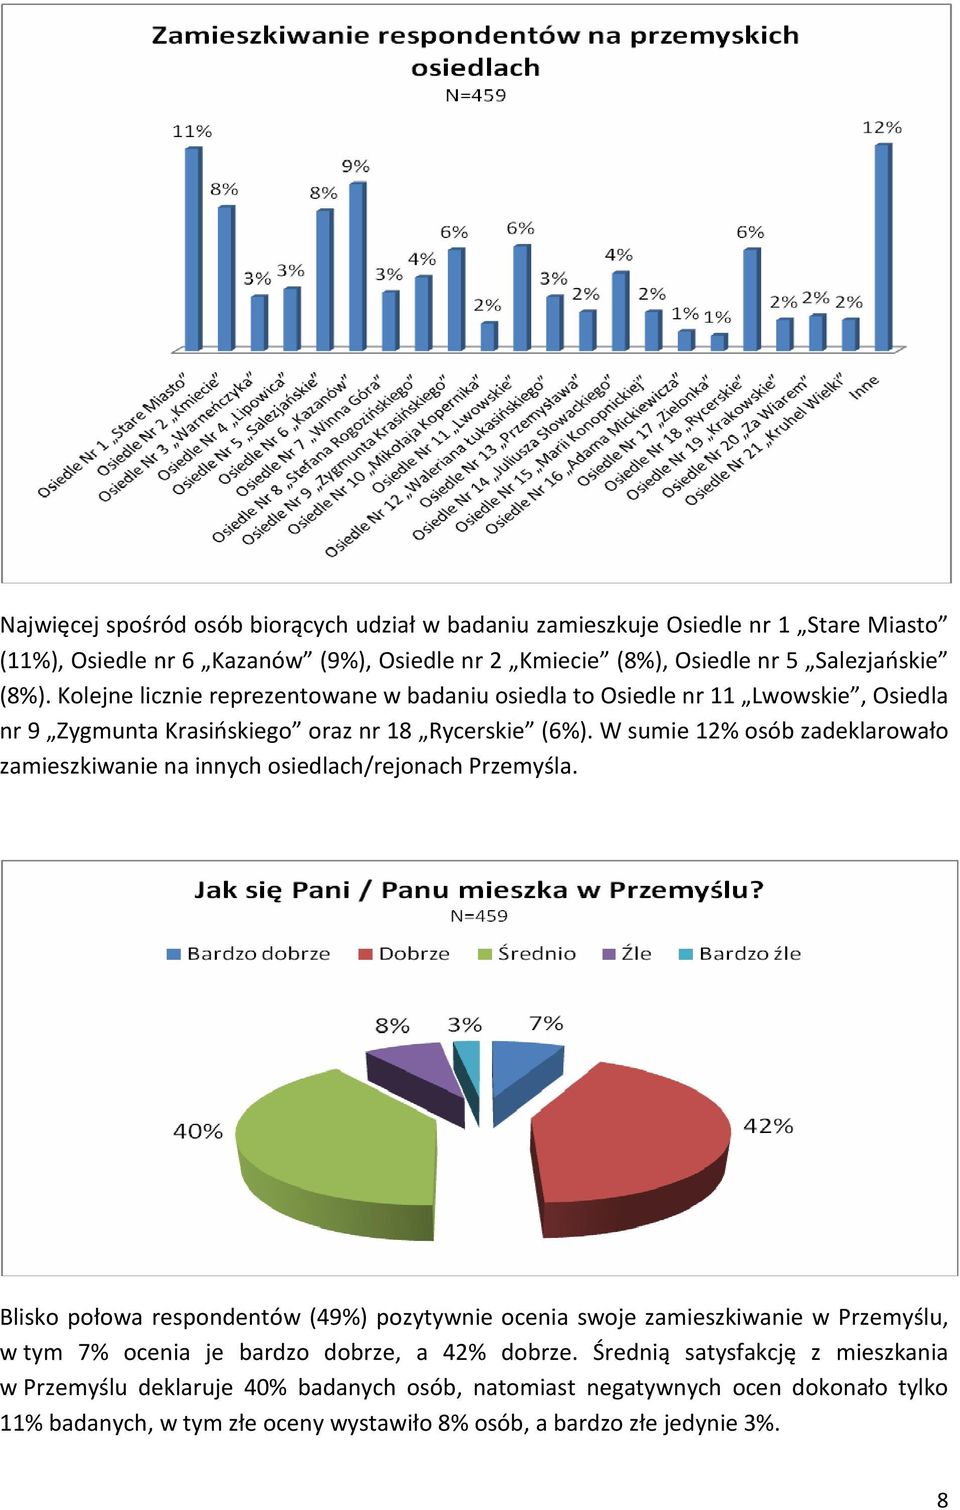 W sumie 12% osób zadeklarowało zamieszkiwanie na innych osiedlach/rejonach Przemyśla.